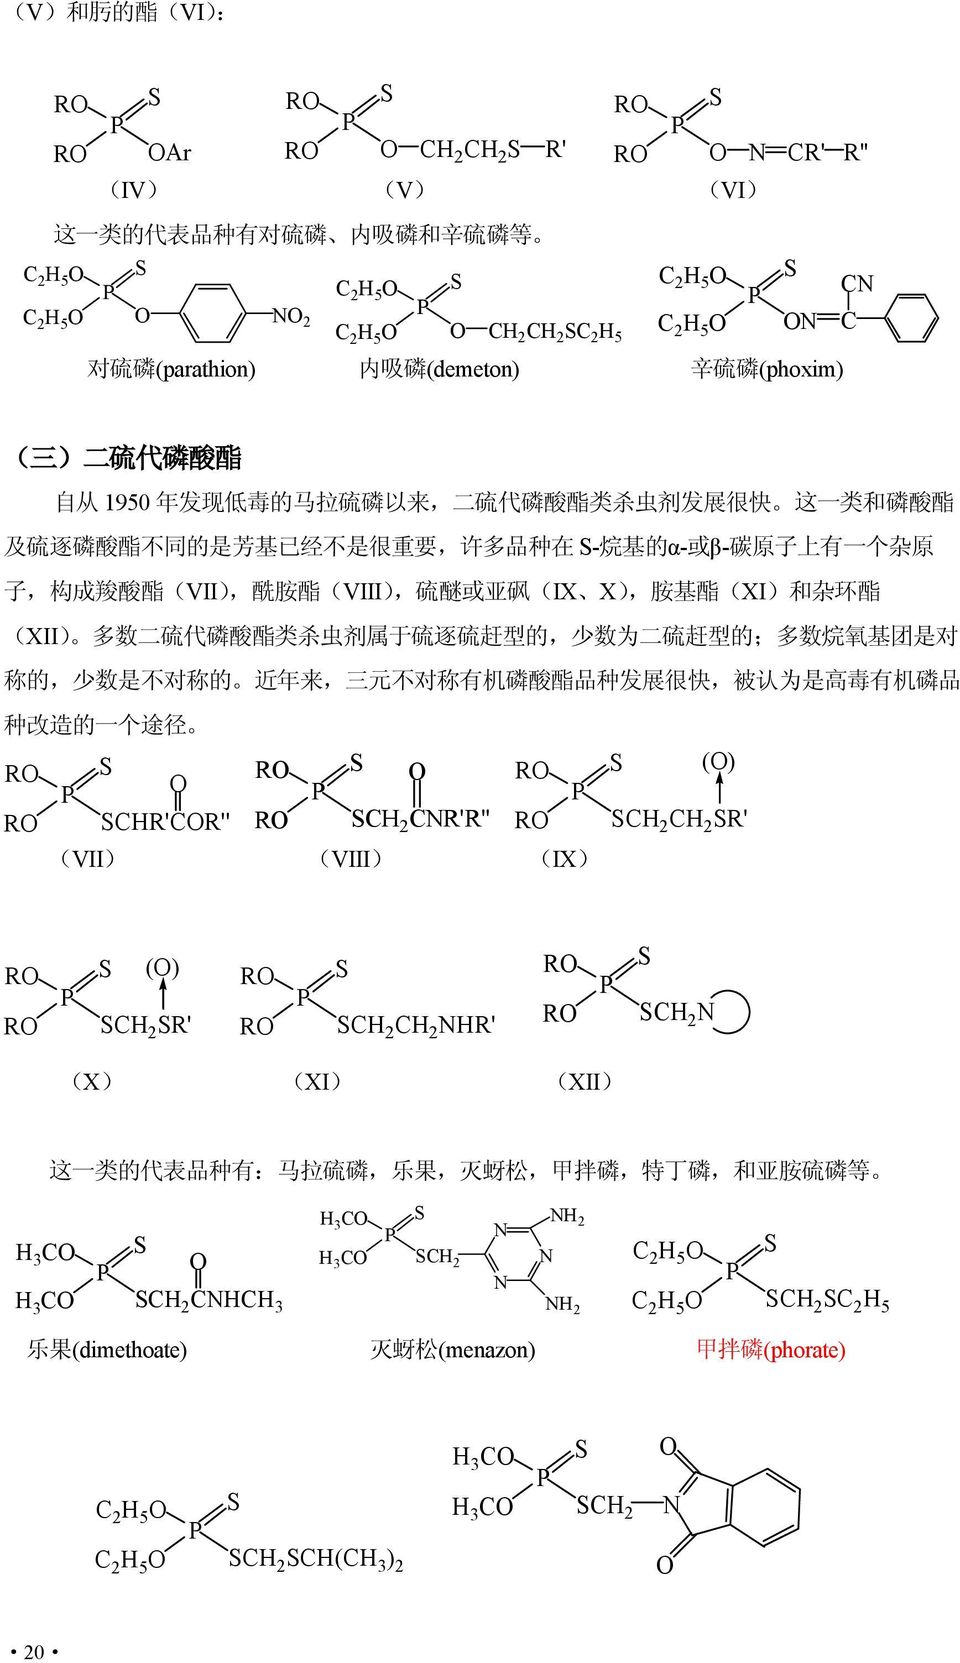 S- 烷 基 的 α- 或 β- 碳 原 子 上 有 一 个 杂 原 子, 构 成 羧 酸 酯 (VII), 酰 胺 酯 (VIII), 硫 醚 或 亚 砜 (IX X), 胺 基 酯 (XI) 和 杂 环 酯 (XII) 多 数 二 硫 代 磷 酸 酯 类 杀 虫 剂 属 于 硫 逐 硫 赶 型 的, 少 数 为 二 硫 赶 型 的 ; 多 数 烷 氧 基 团 是 对 称 的, 少 数 是 不